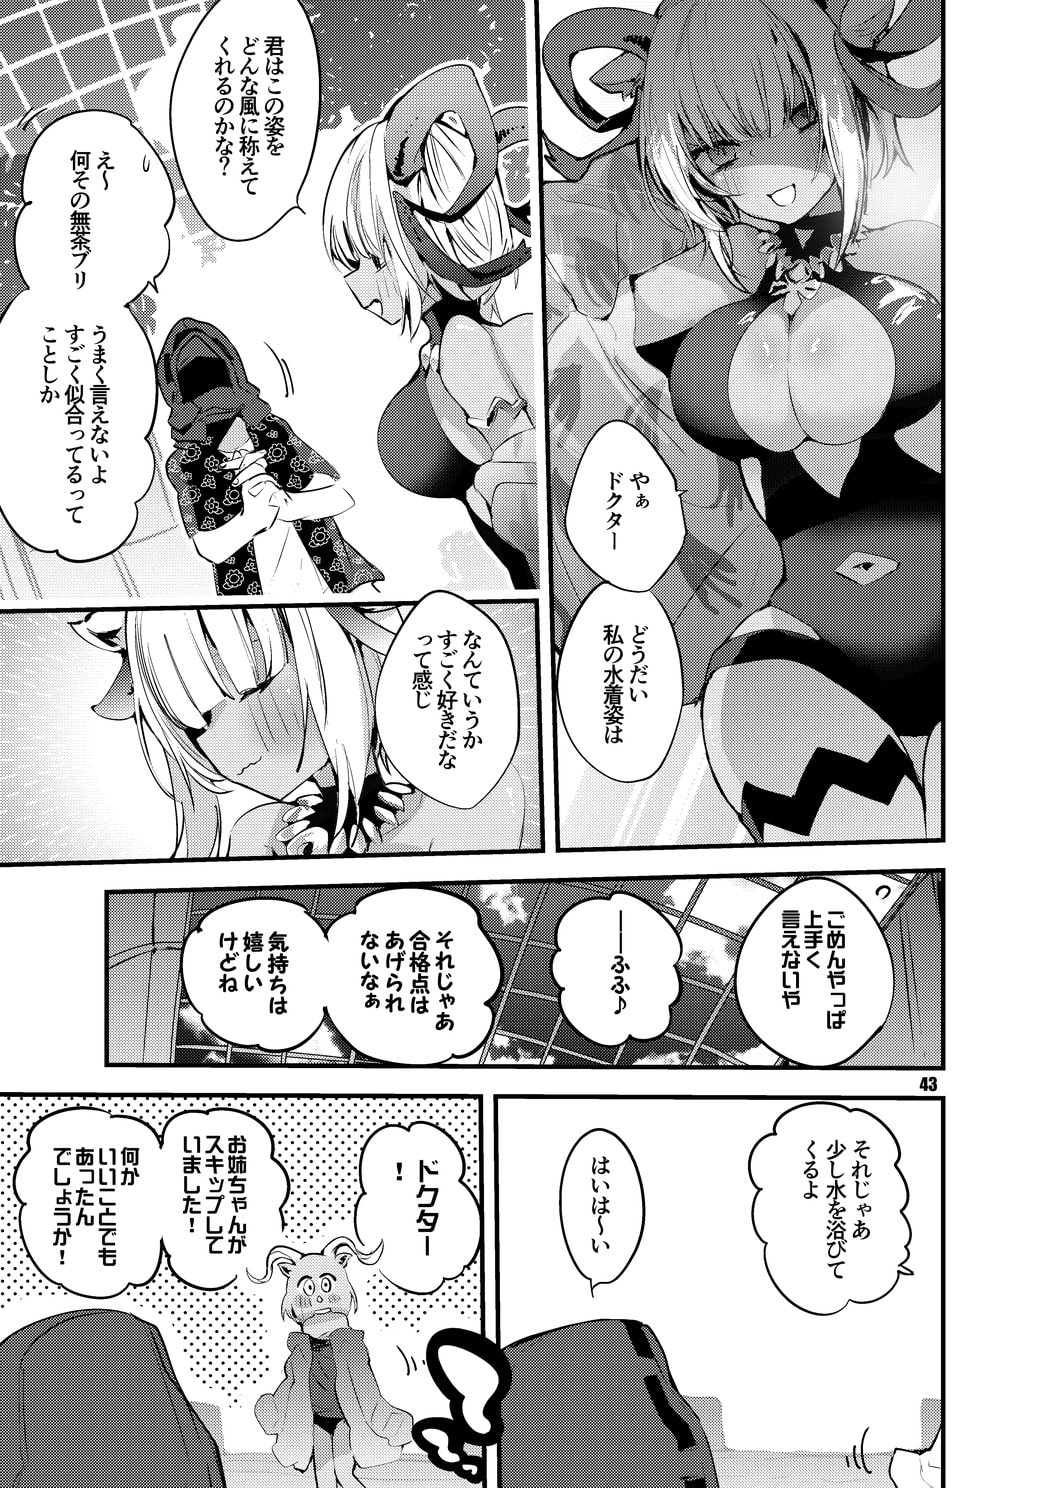 方舟漫画作戦記録vol.2